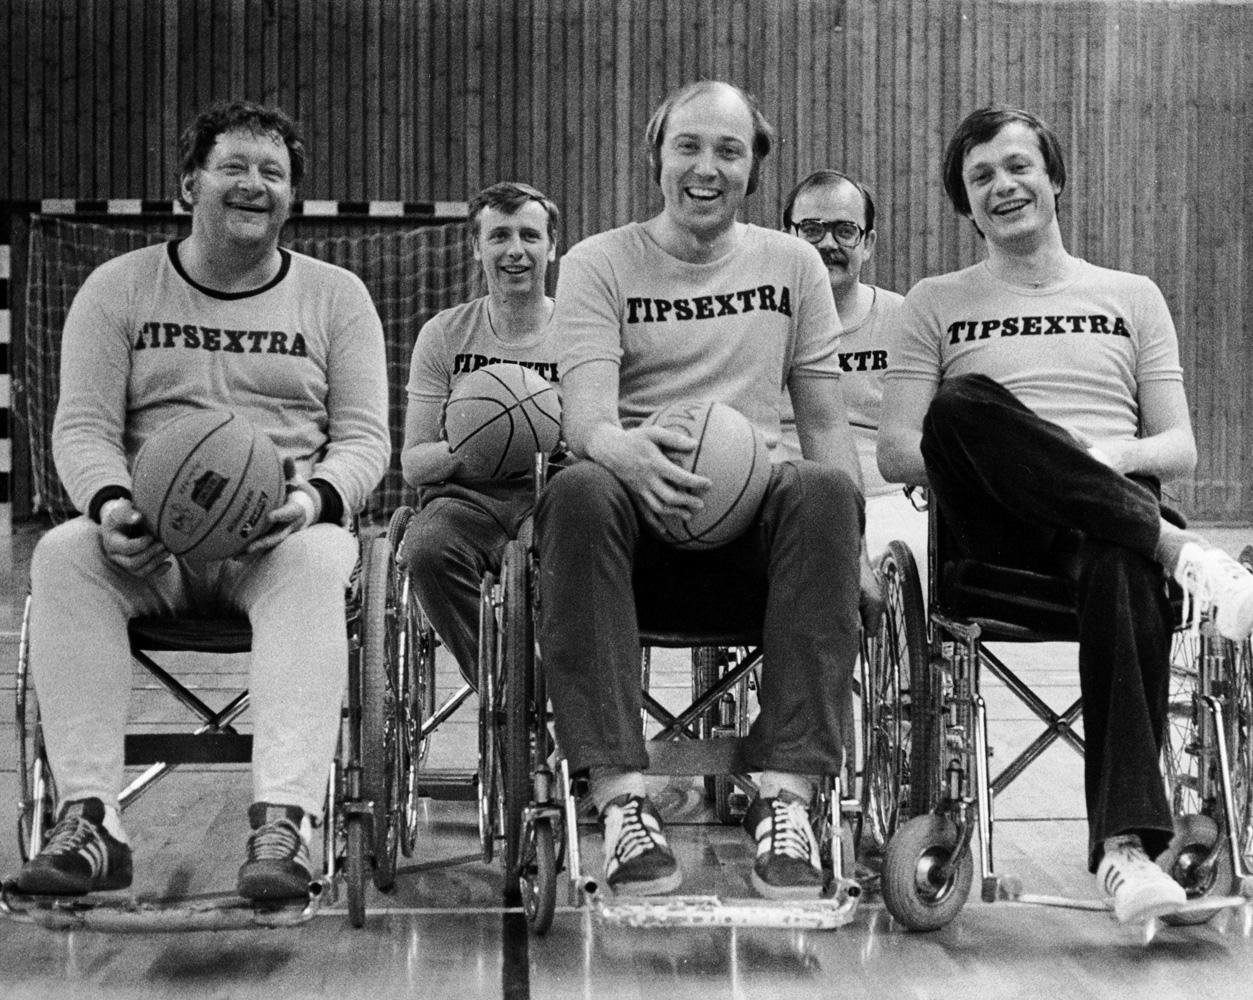 Tipsextraprofilerna Leif Larsson, Ingvar Oldsberg, ”Loket” Olsson och Fredrik Belfrage var med och spelade rullstolsbasket 1977.